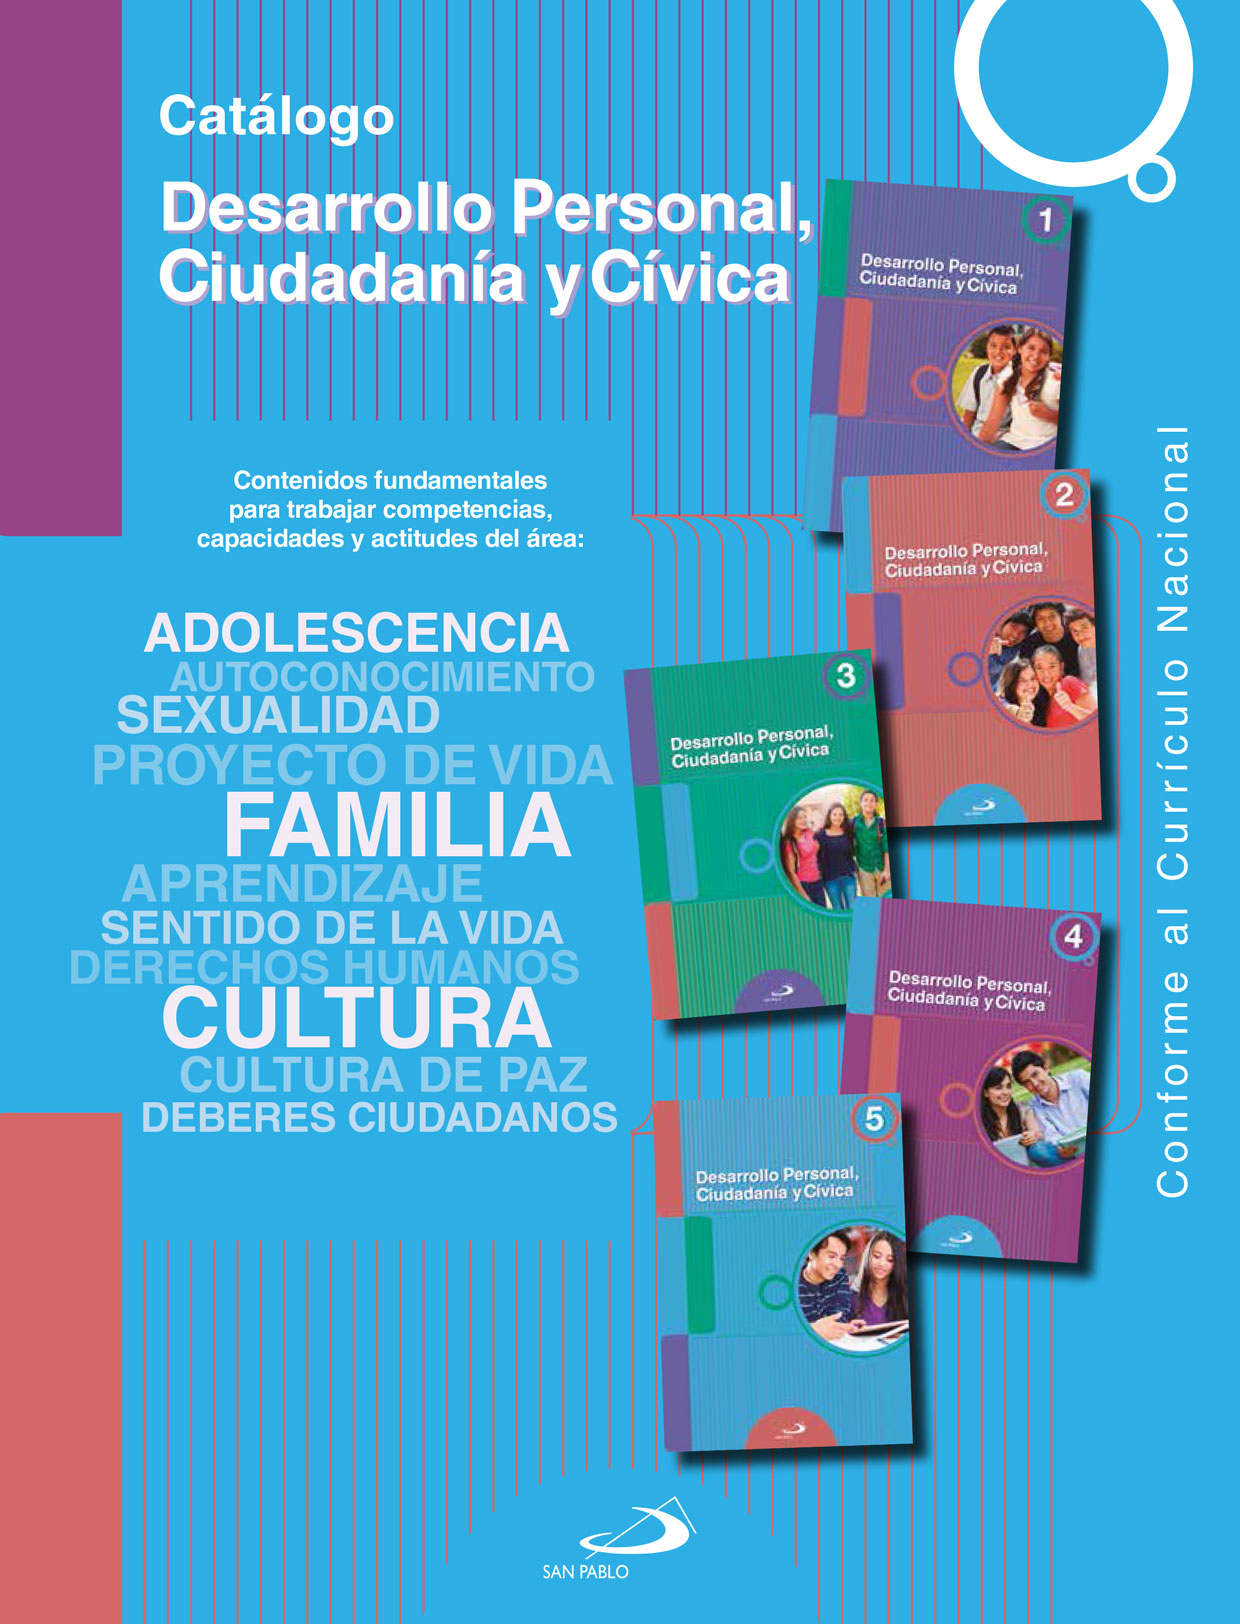 Catálogo de Desarrollo Personal, Ciudadanía y Cívica 2020